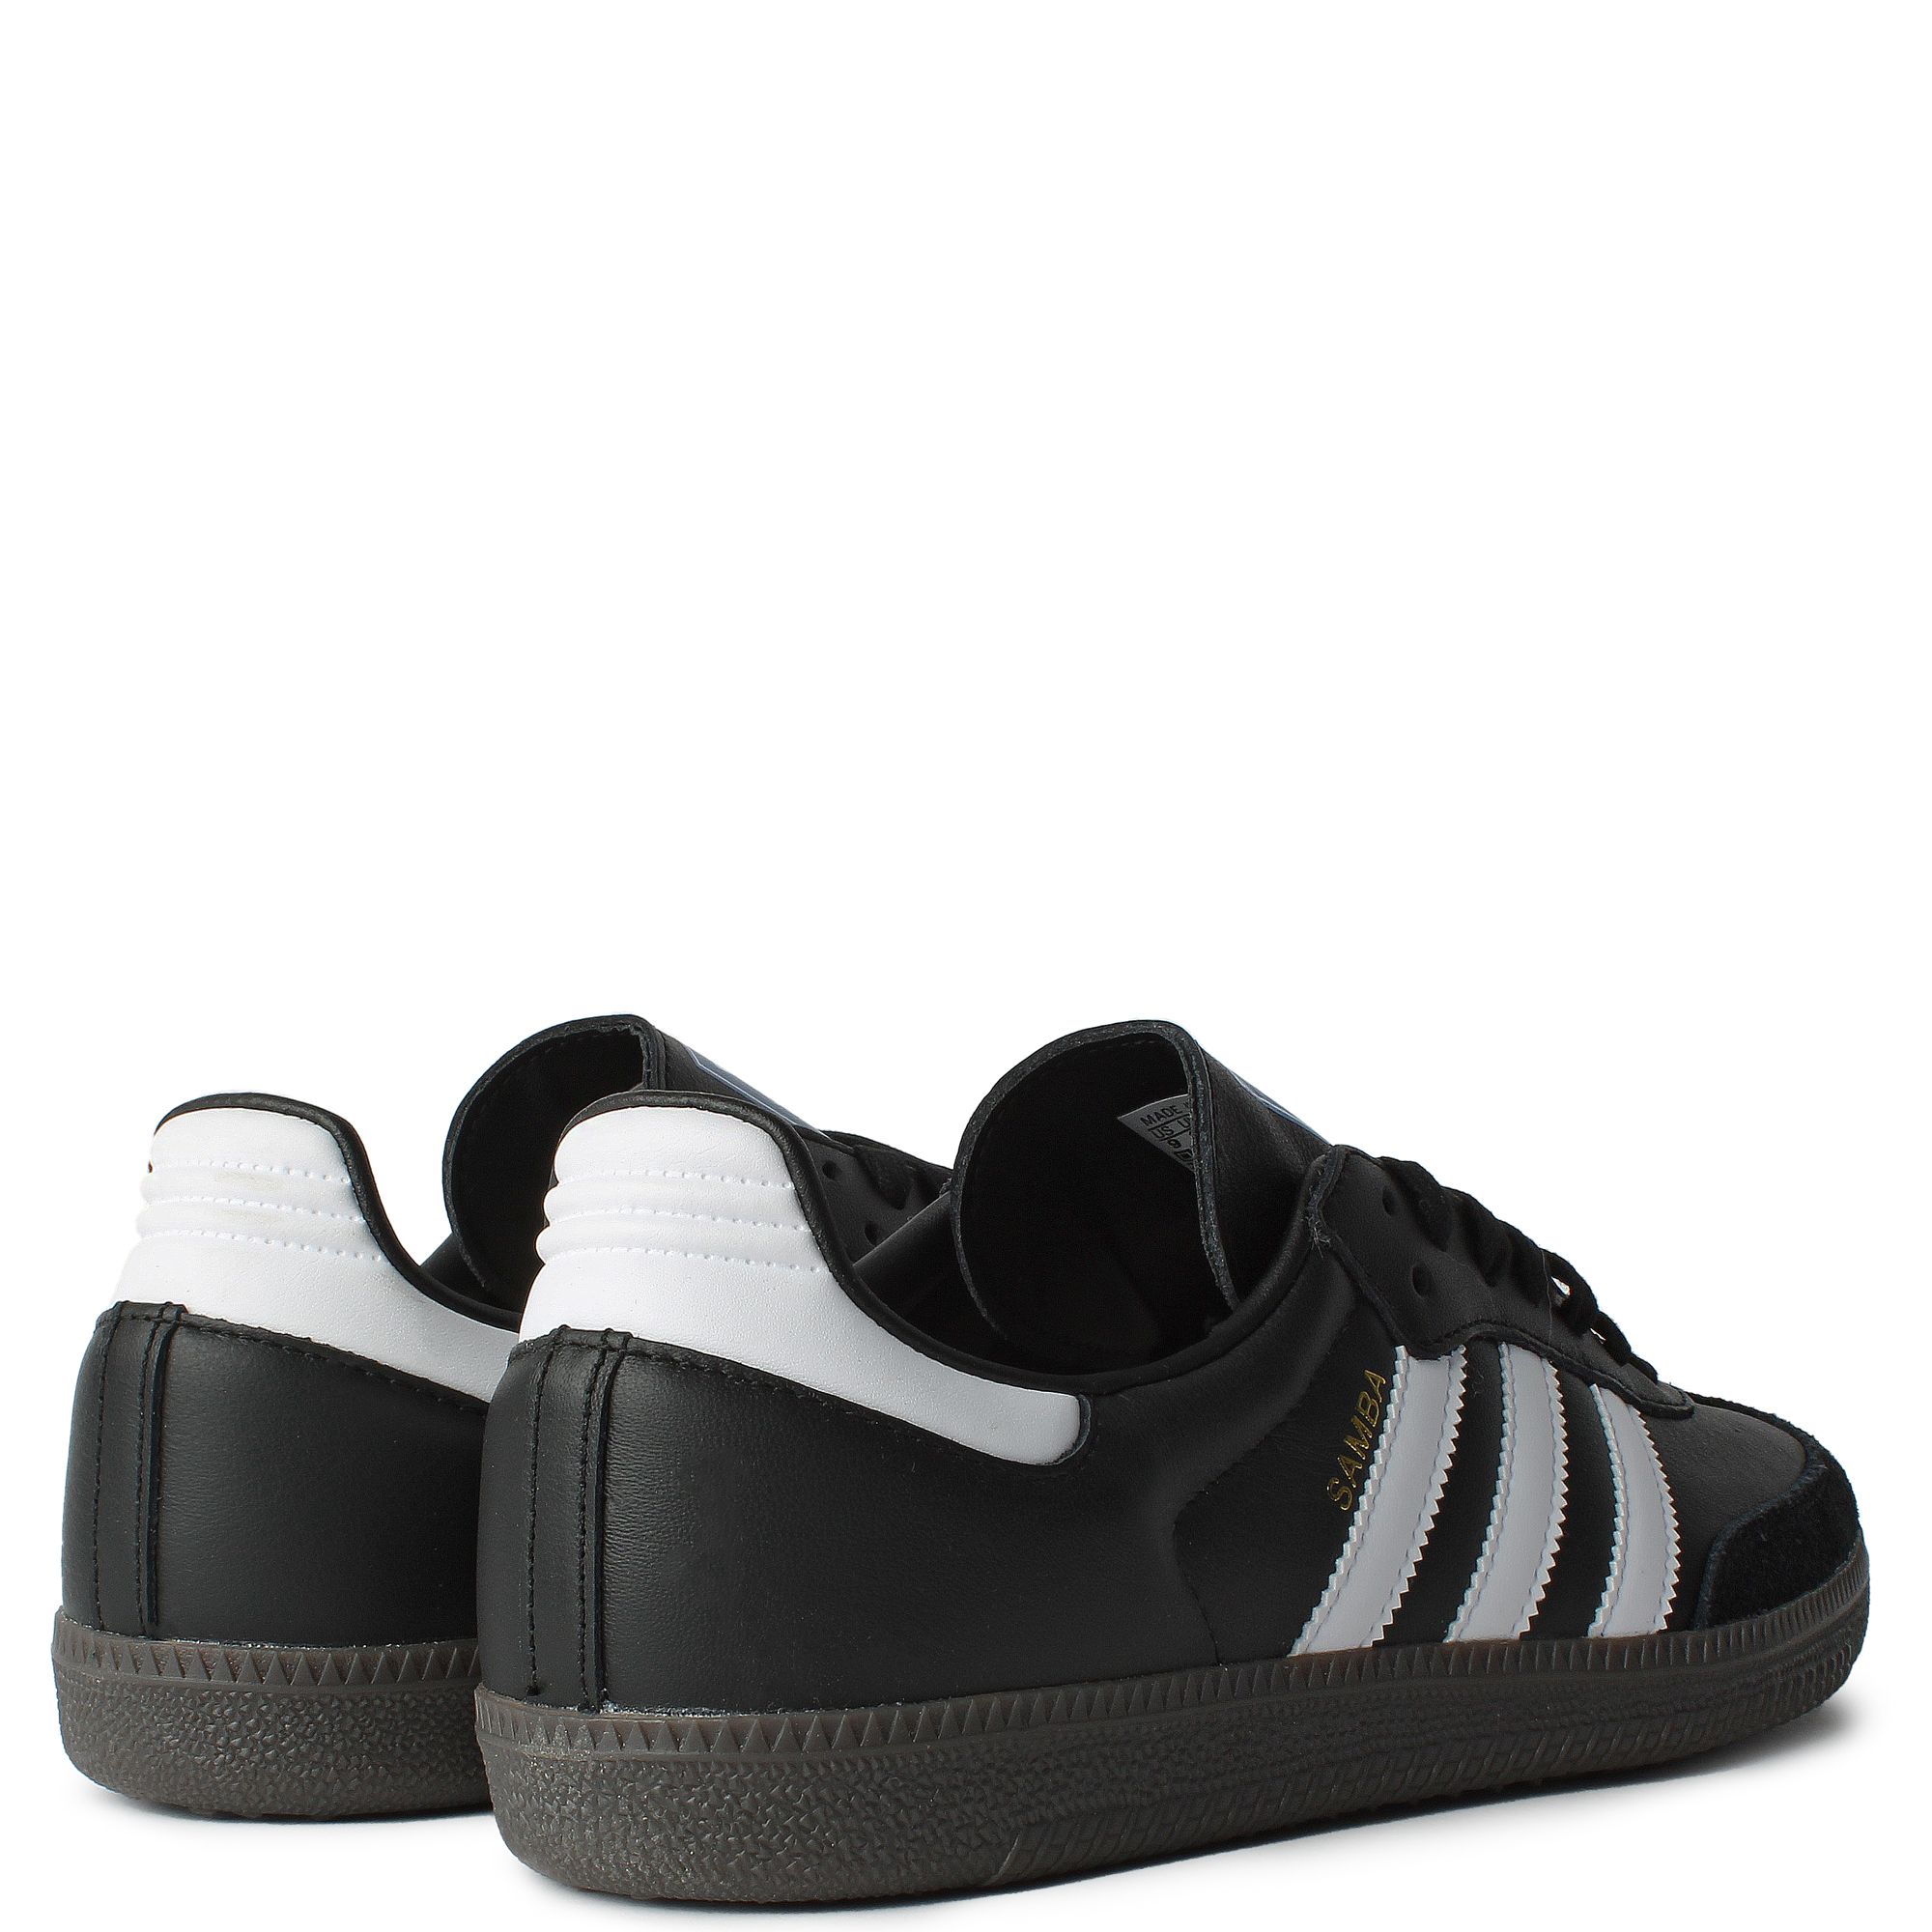 Adidas Samba OG Sneakers in Core Black/White, Size UK 6 | END. Clothing